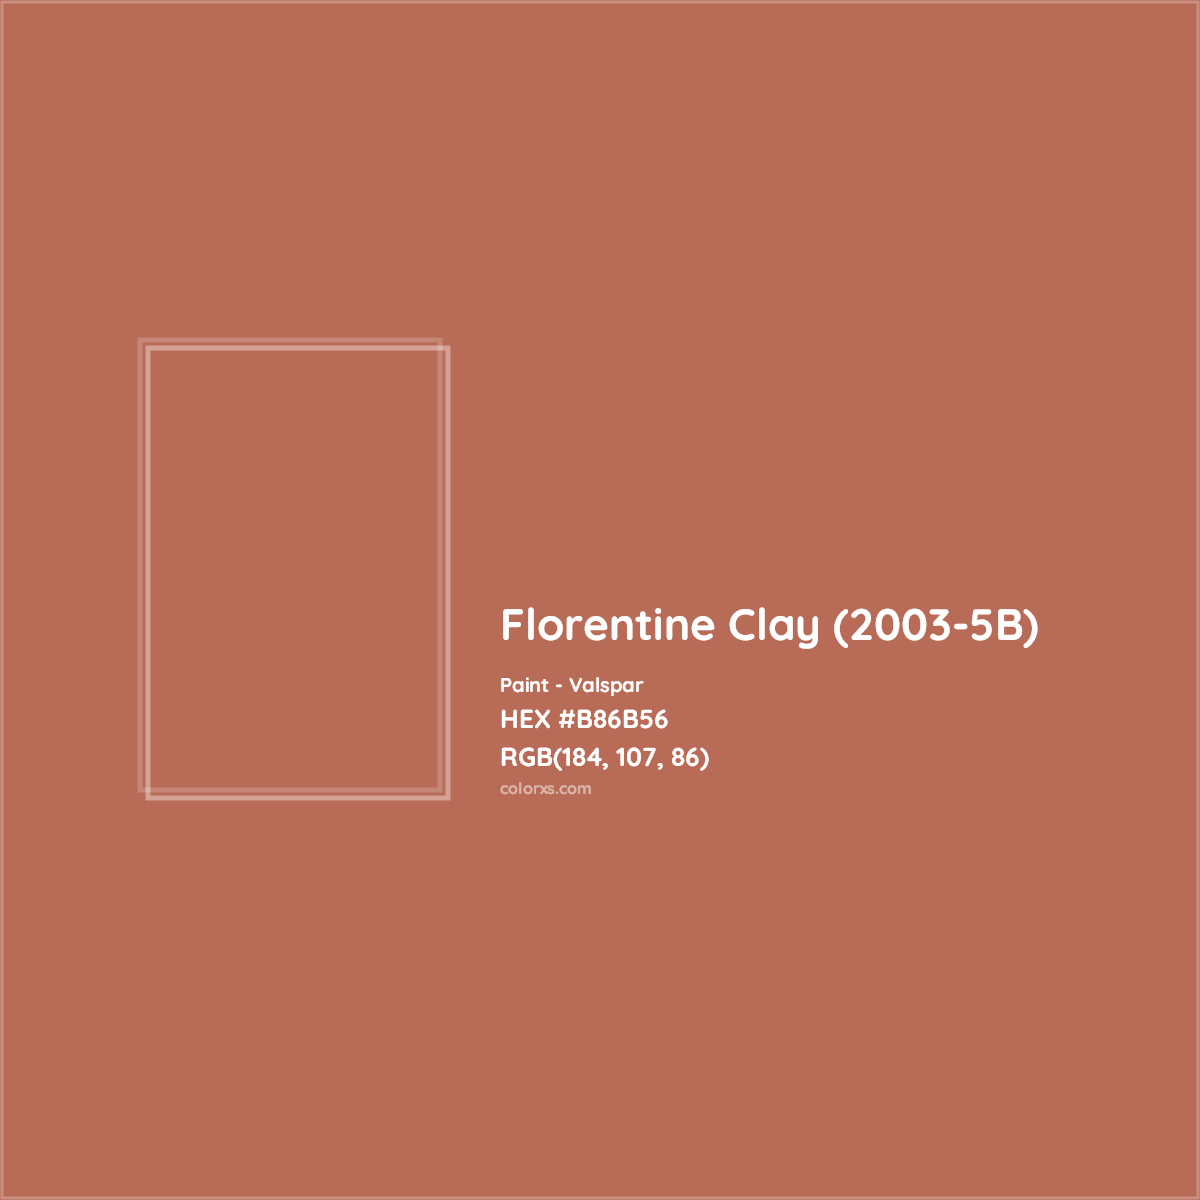 HEX #B86B56 Florentine Clay (2003-5B) Paint Valspar - Color Code